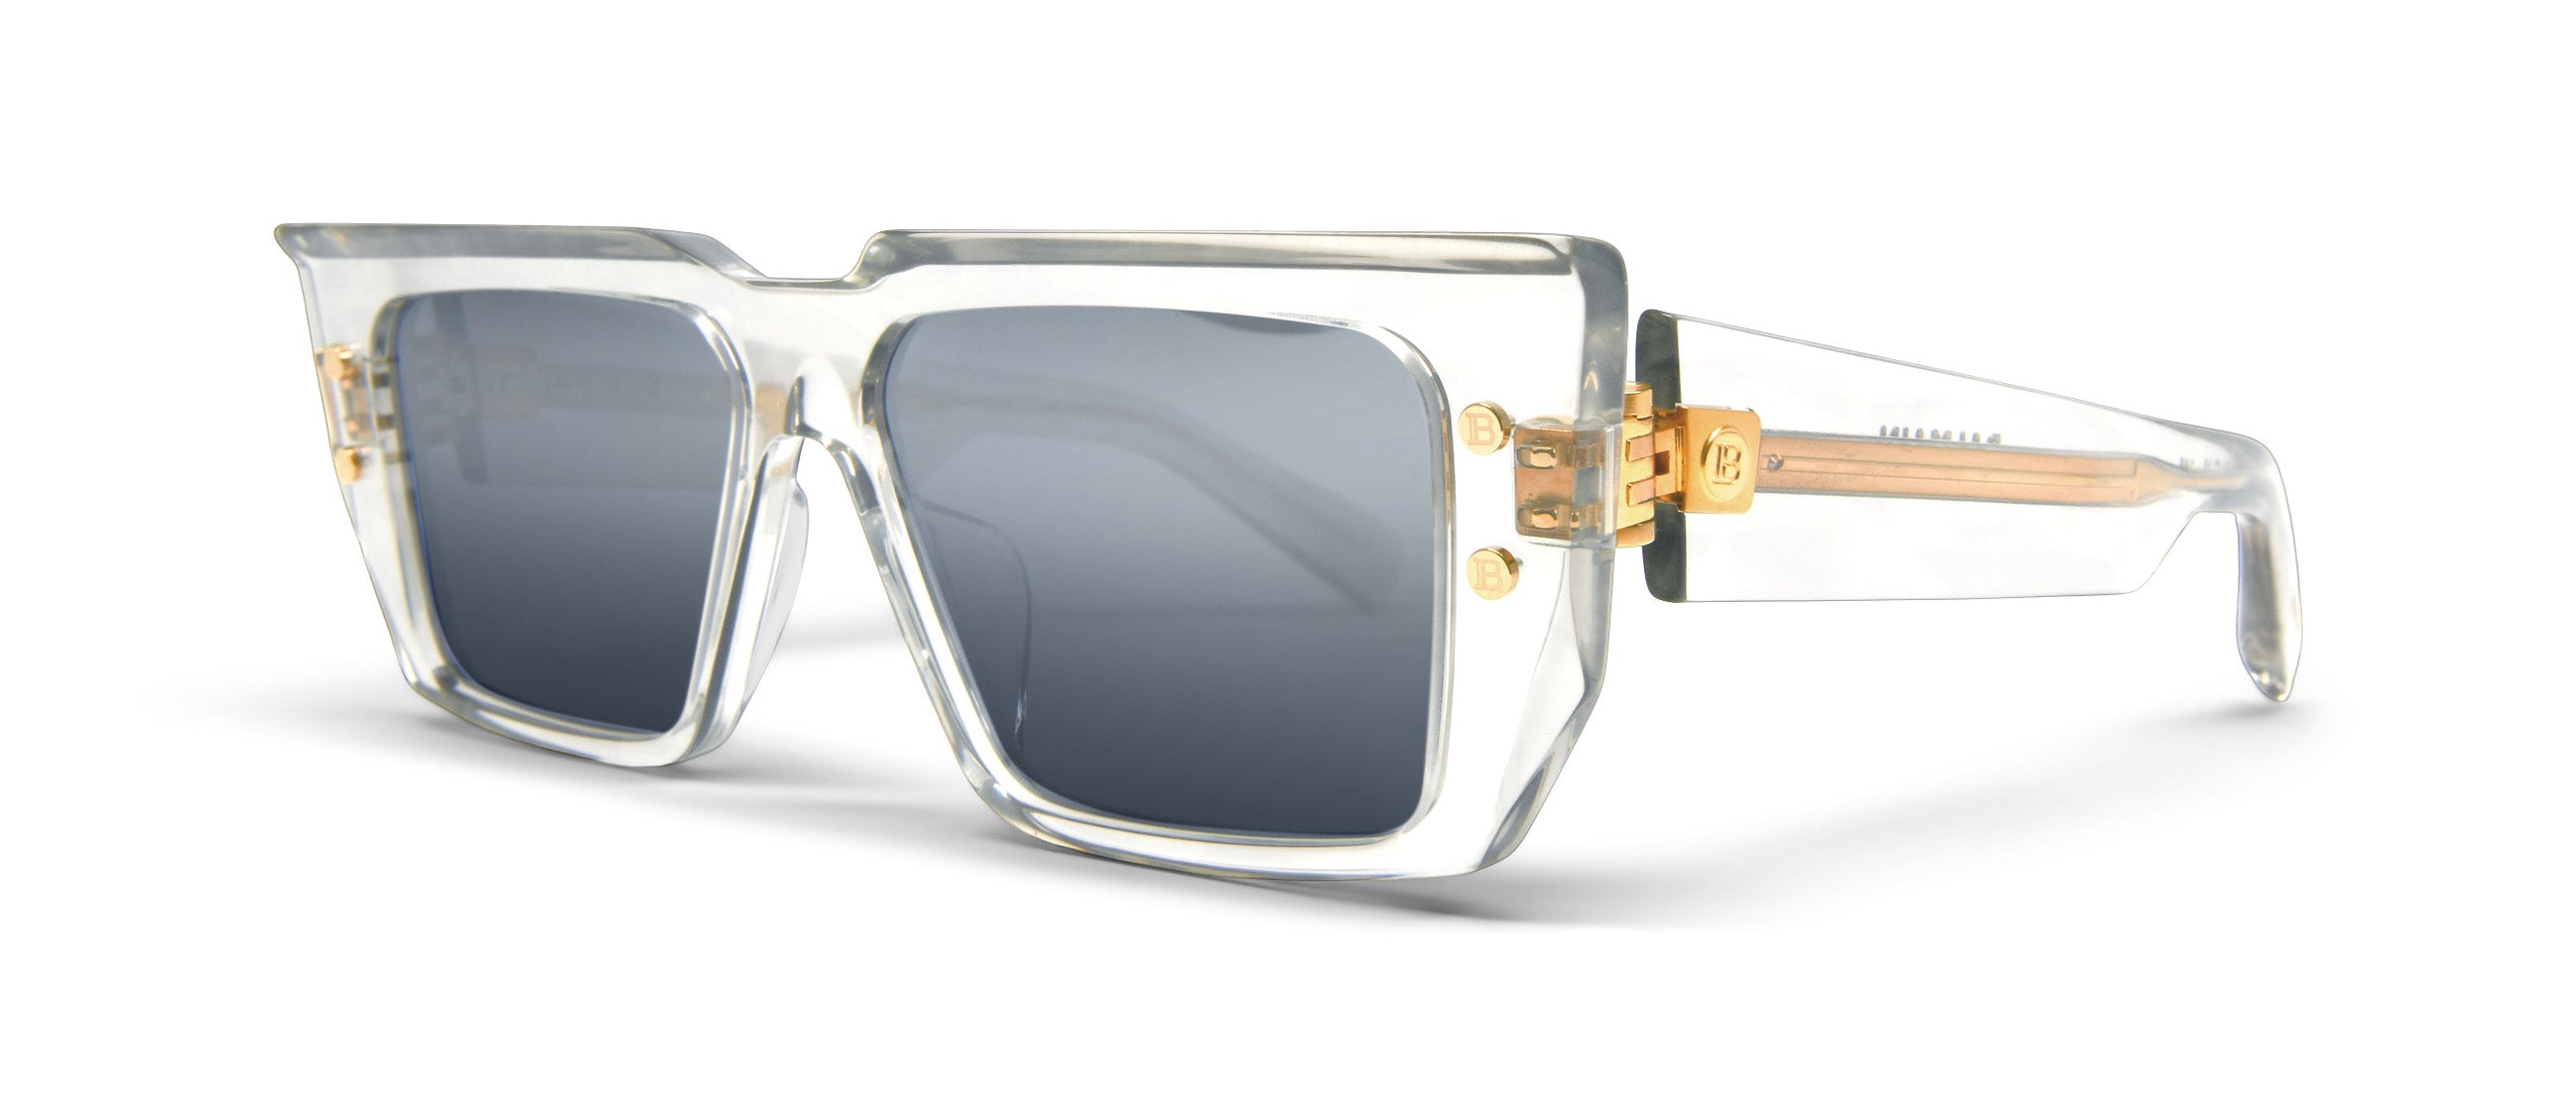 Louis Vuitton 1.1 Millionaires Sunglasses Grey Acetate & Metal. Size W